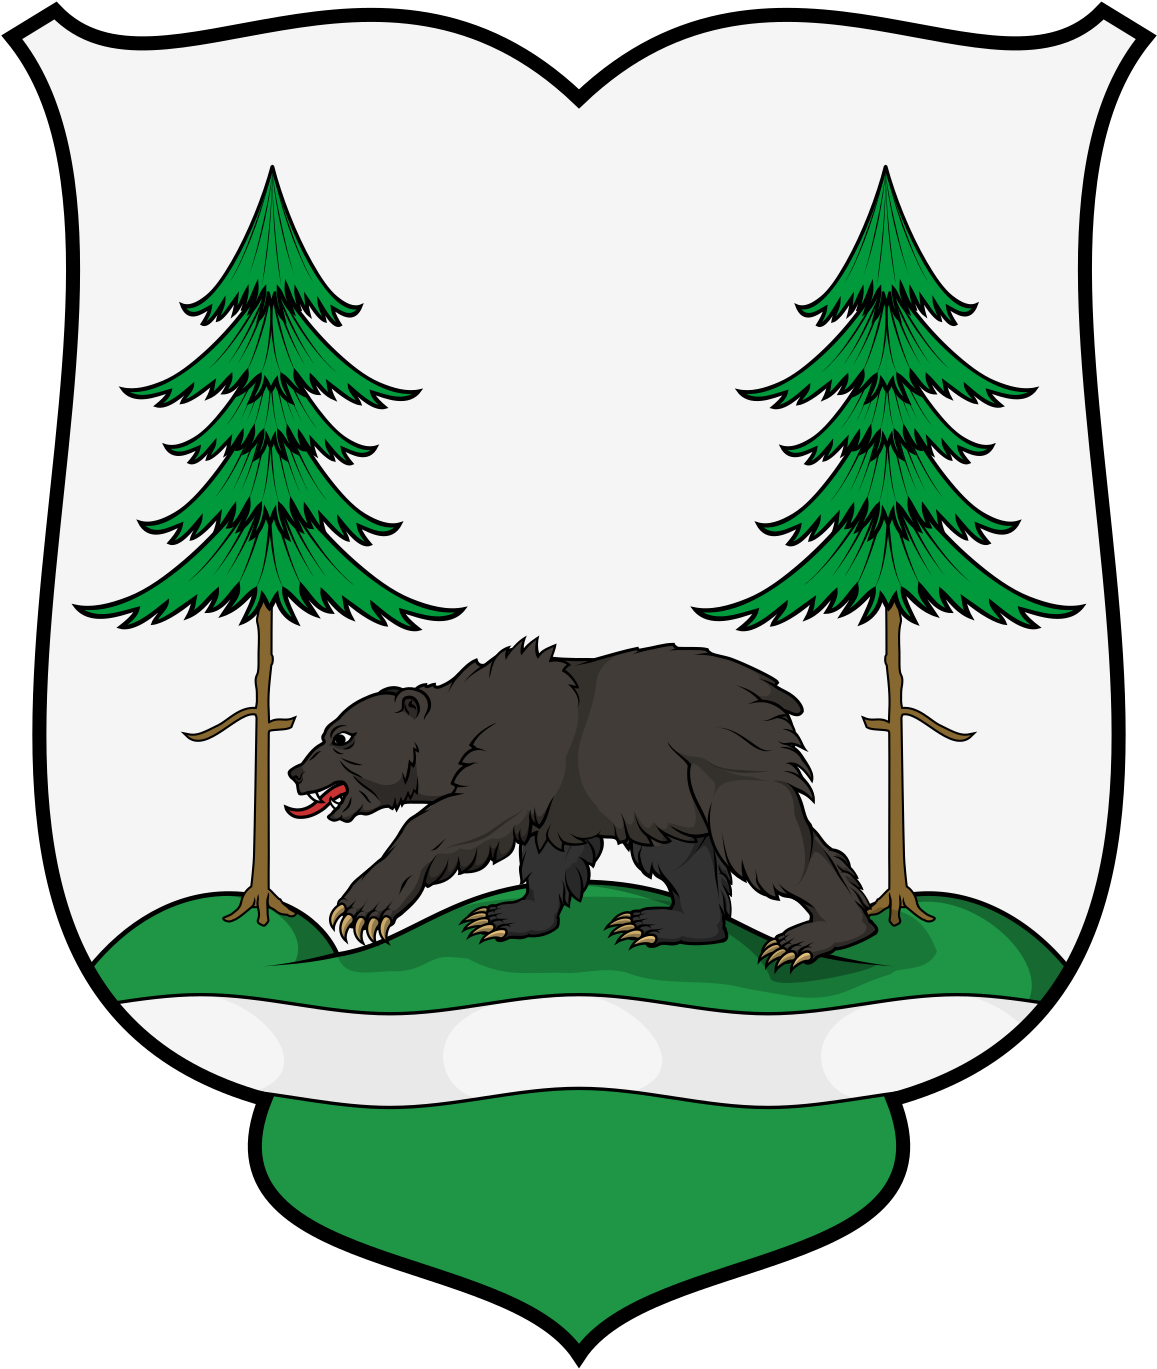 Árva County (1200x1406)